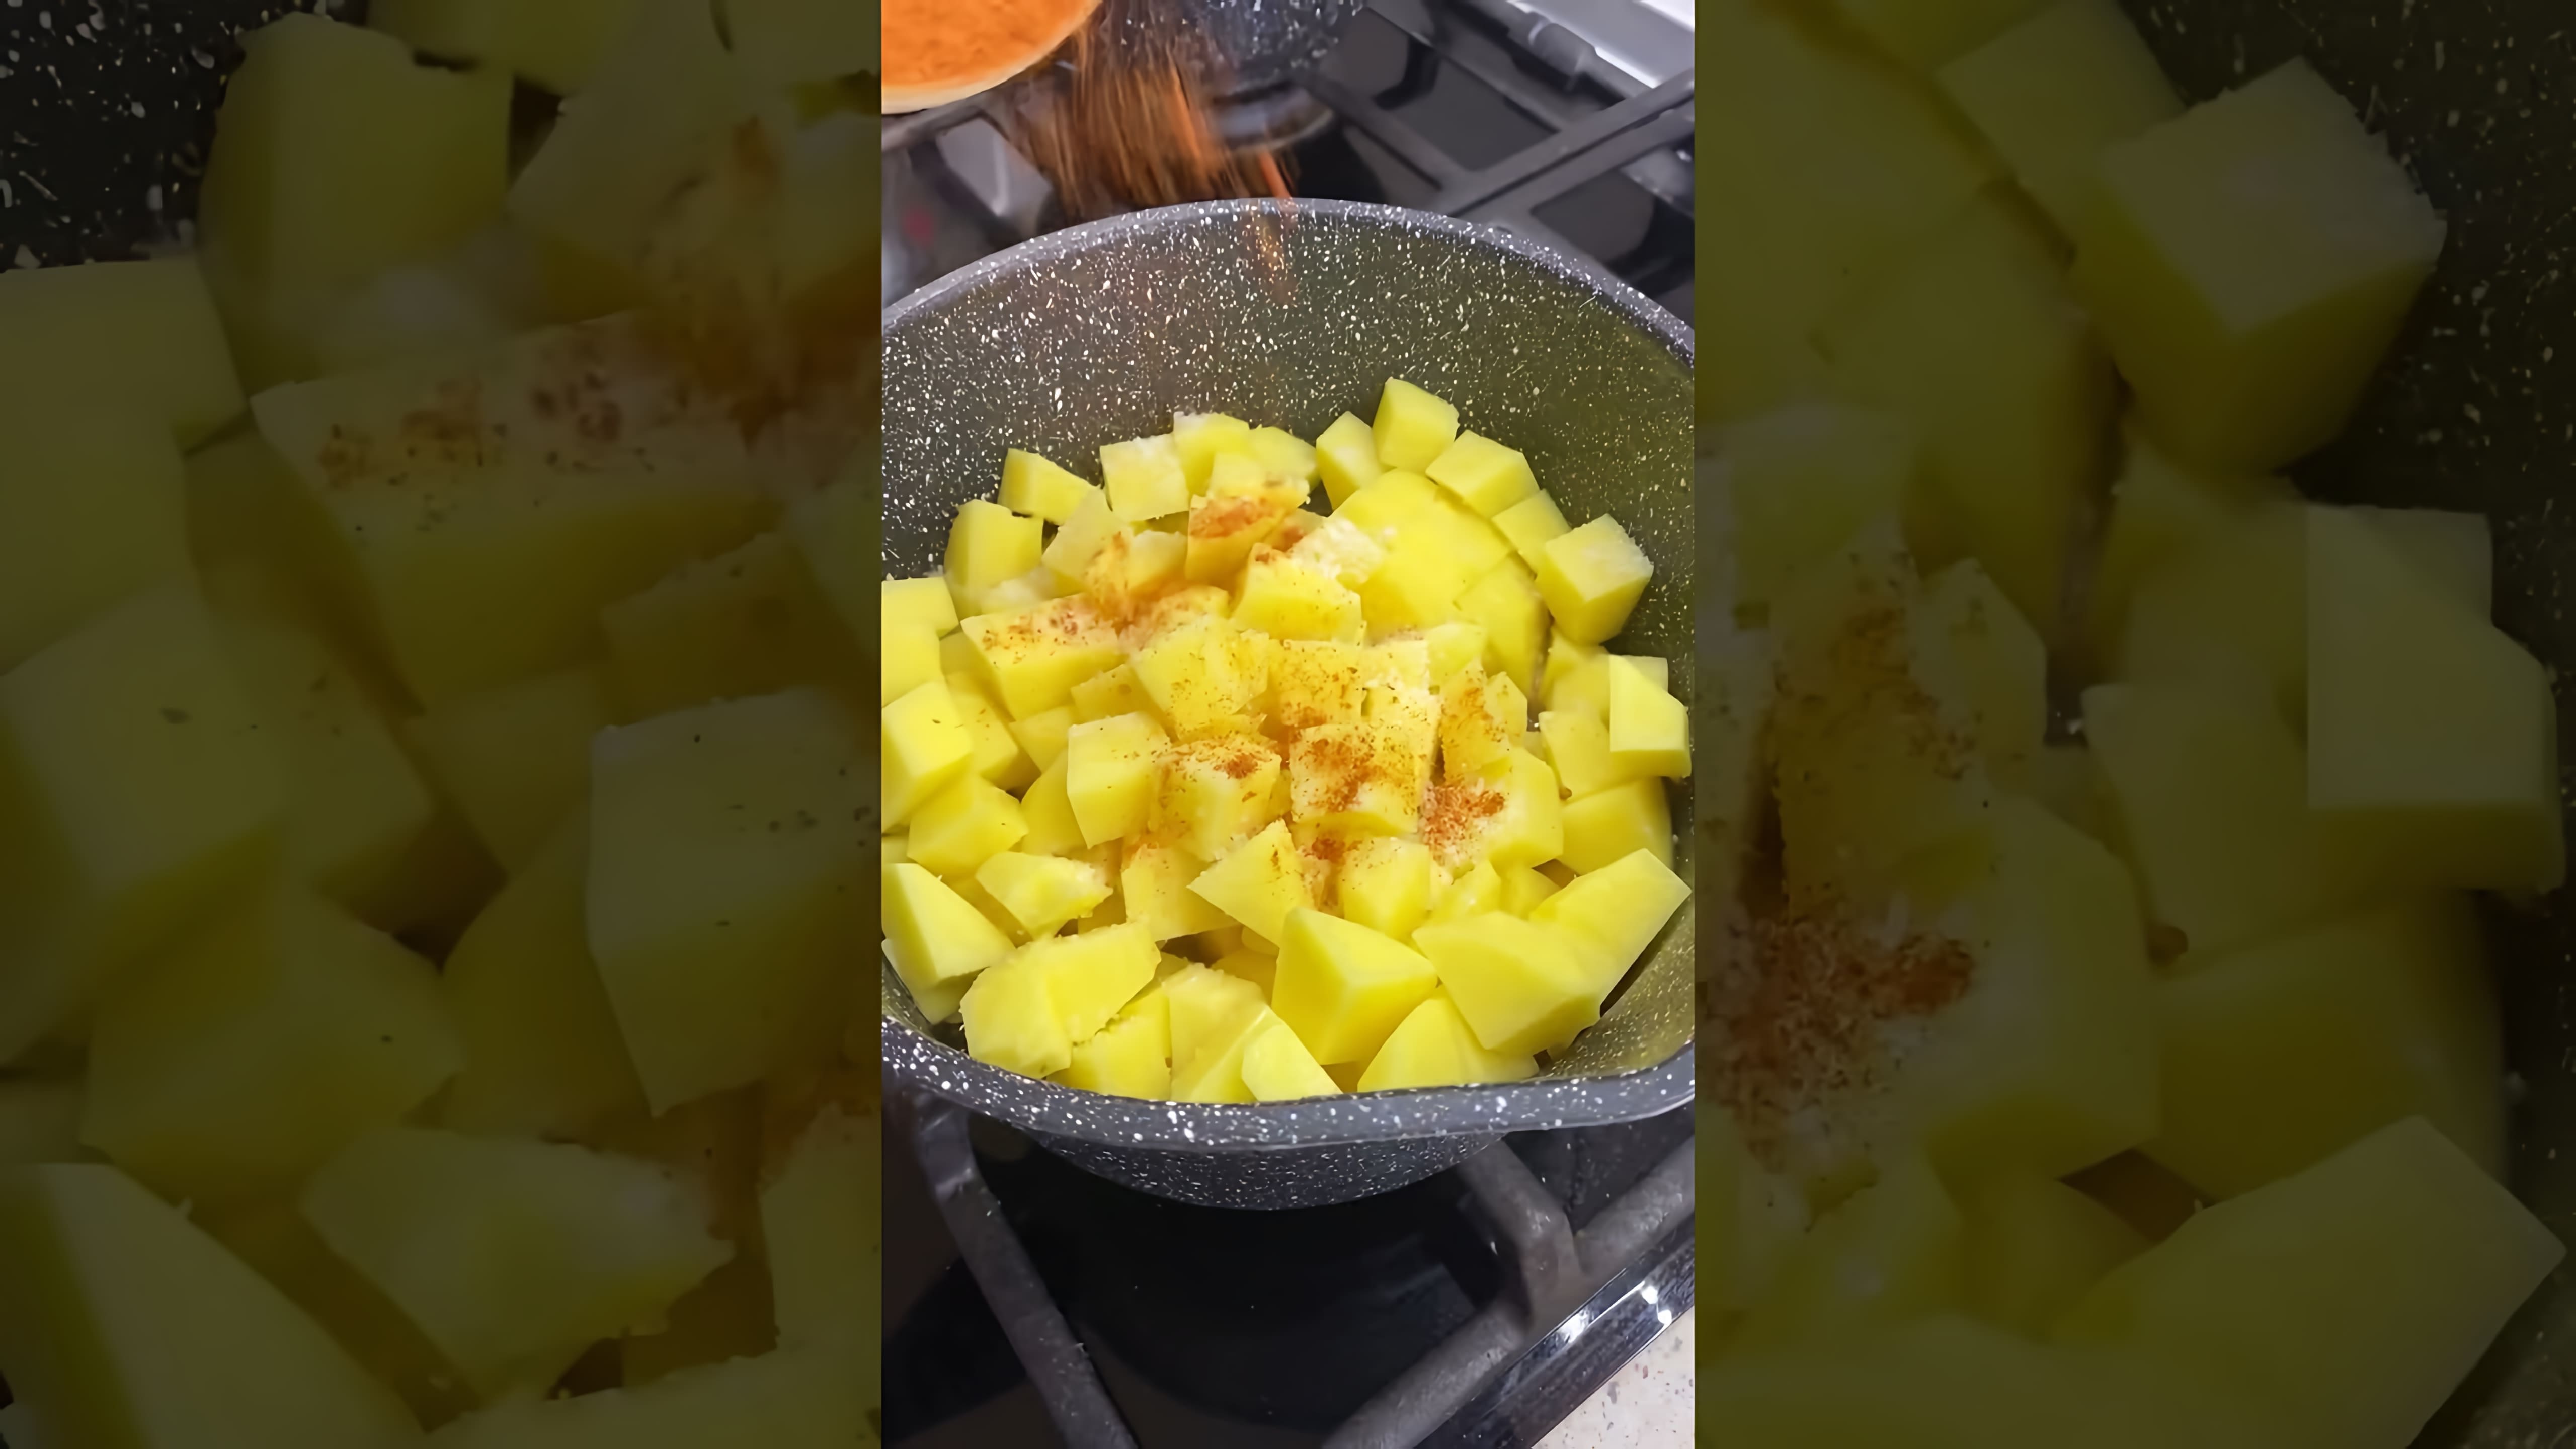 В этом видео демонстрируется процесс приготовления сытного блюда, которое можно подавать как суп или второе